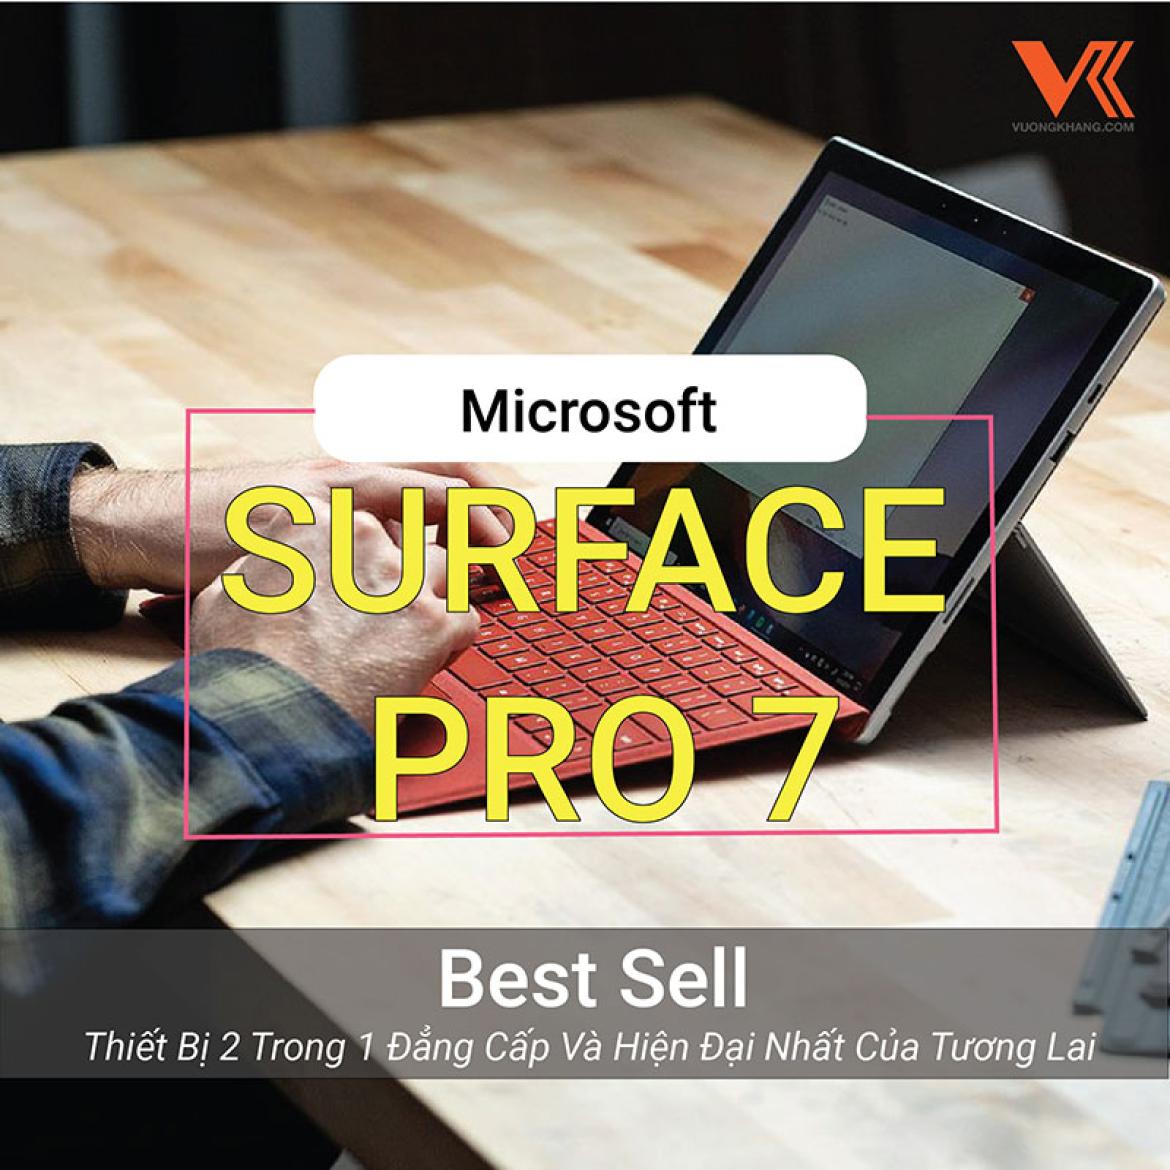 Surface Pro 7 - Thiết Bị 2 Trong 1 Đẳng Cấp Và Hiện Đại Nhất Của Tương Lai